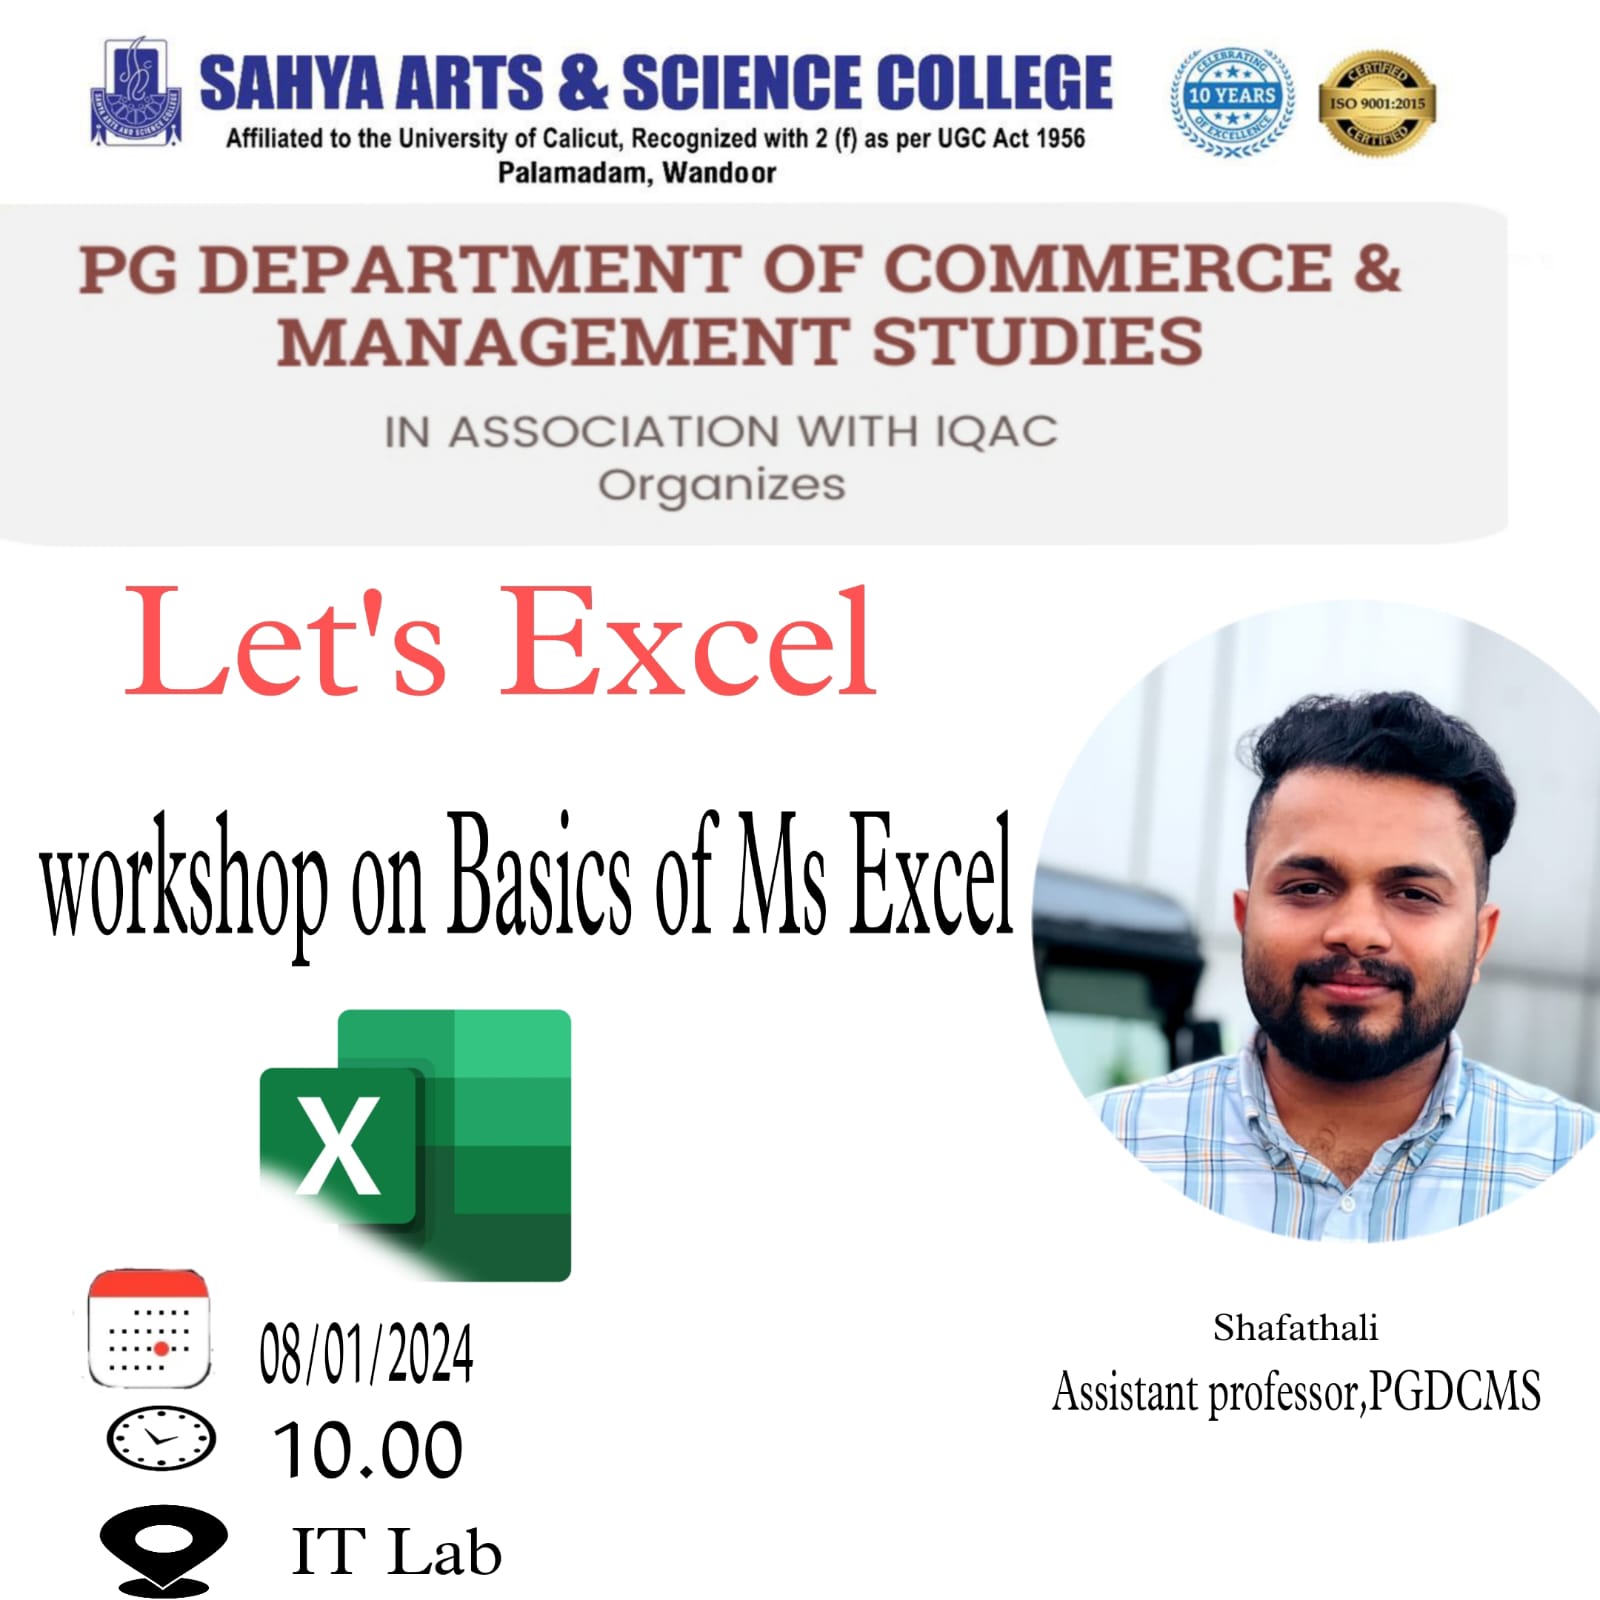 Let's Excel: Workshop on Basics of MS Excel